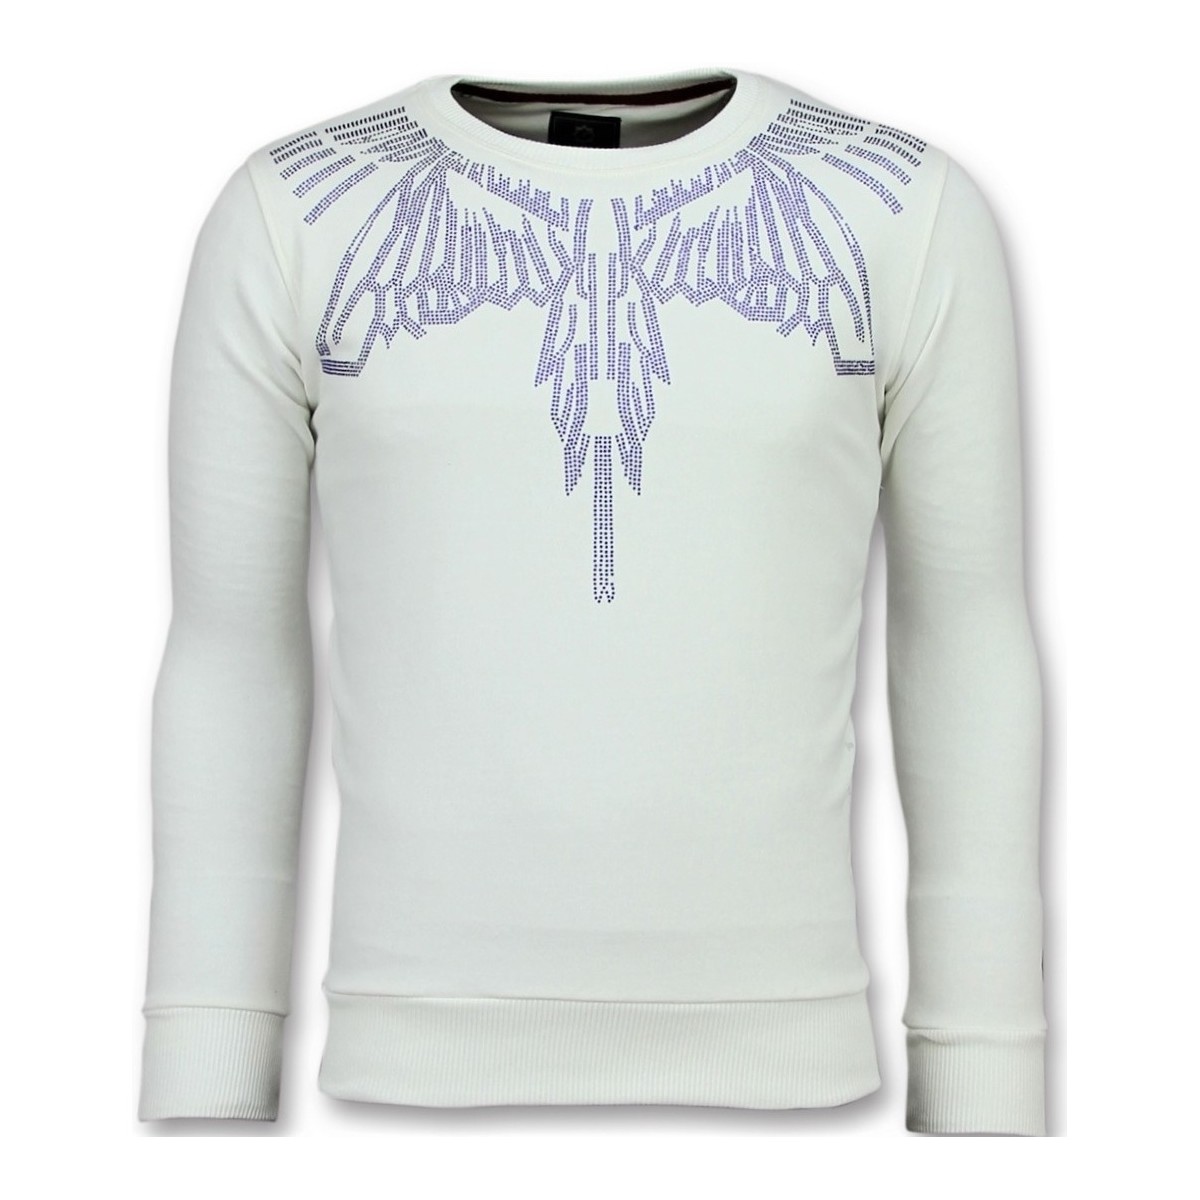 Textiel Heren Sweaters / Sweatshirts Local Fanatic Eagle Glitter Merk W Wit